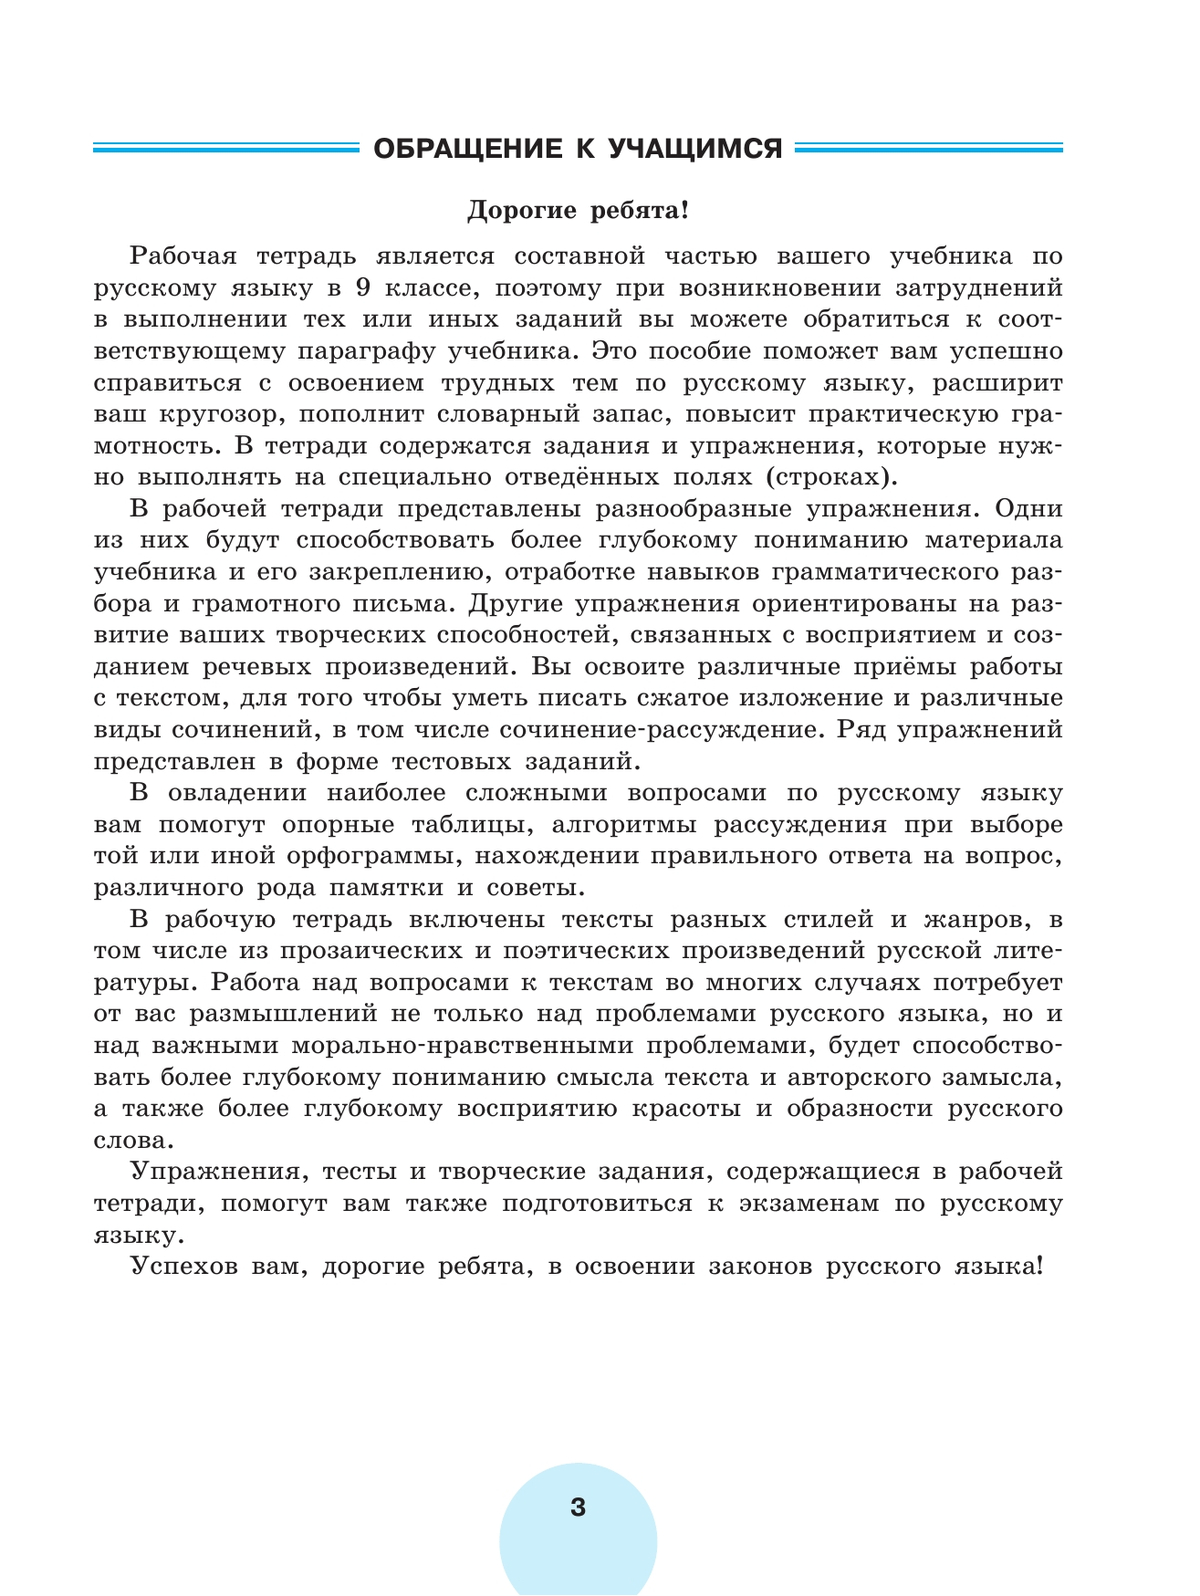 Русский язык. Рабочая тетрадь. 9 класс. В 2 ч. Часть 2 7